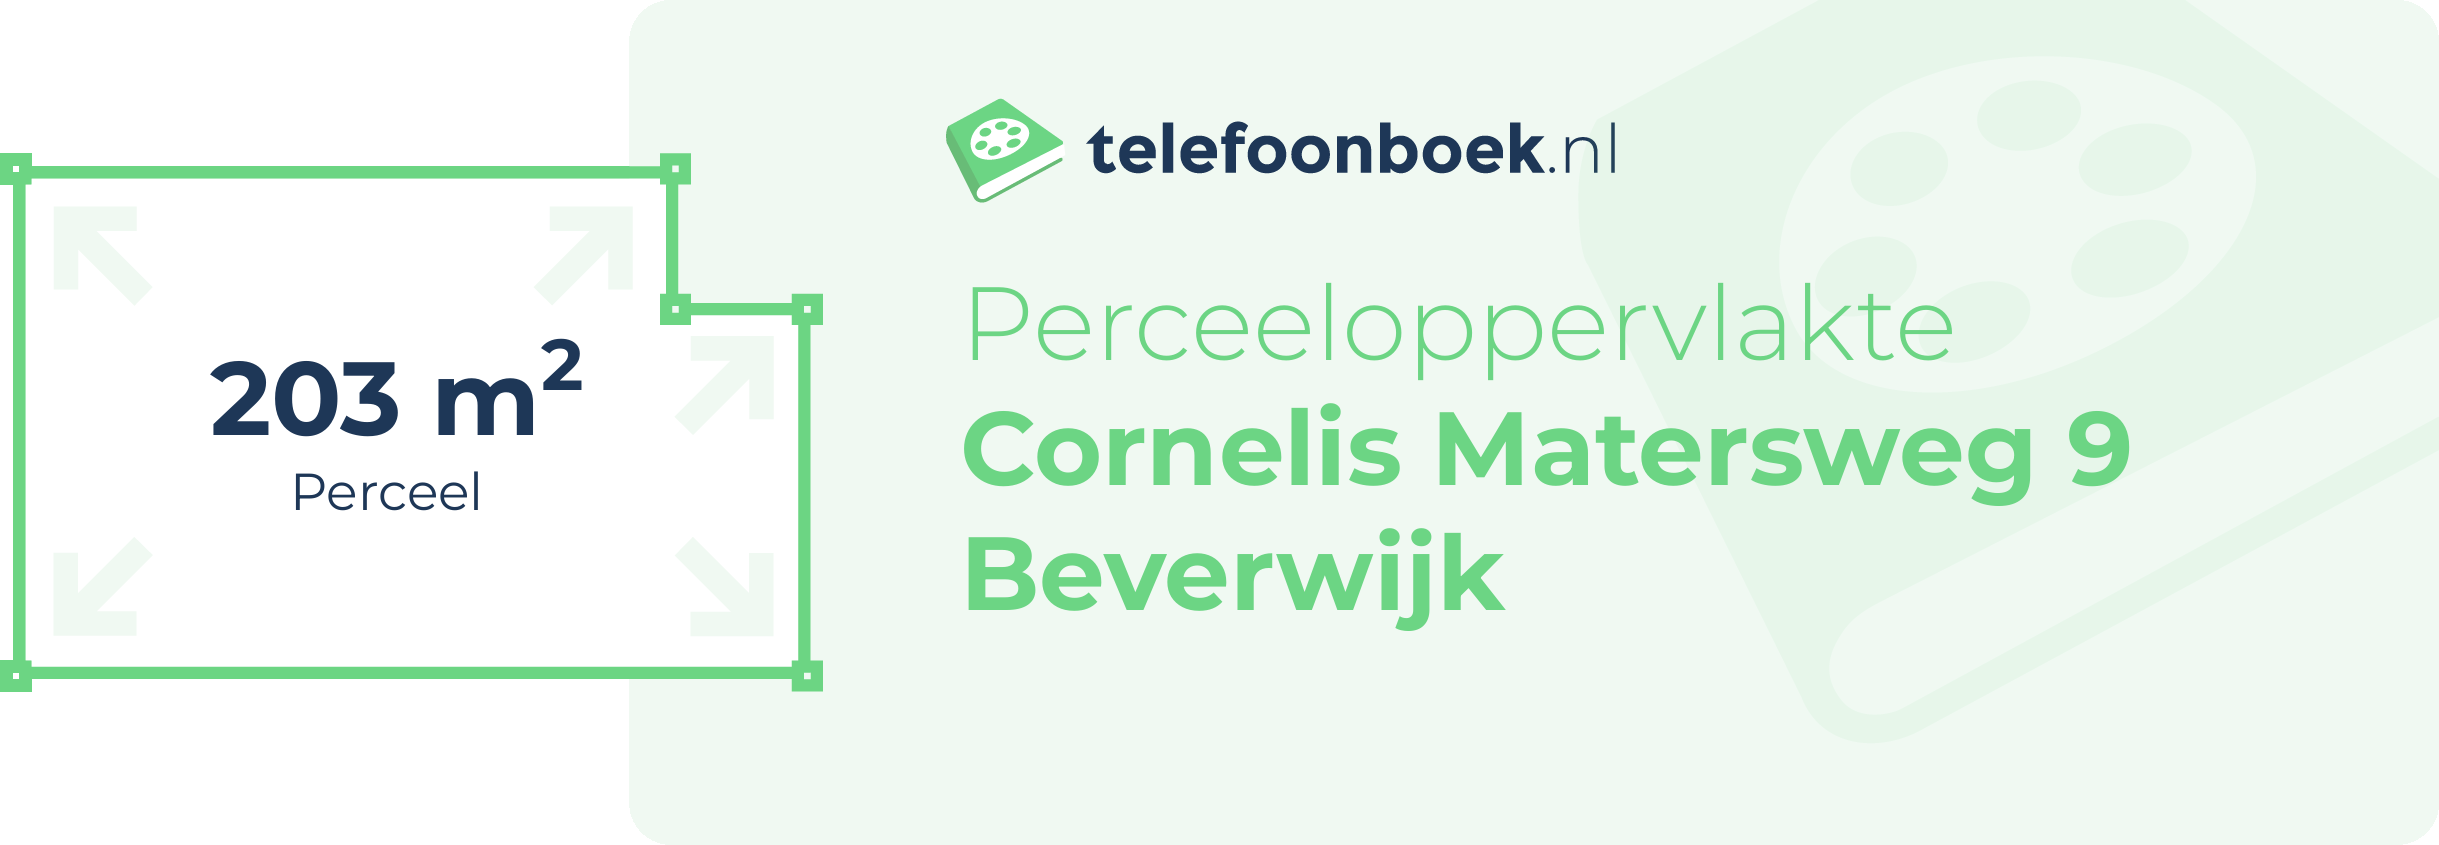 Perceeloppervlakte Cornelis Matersweg 9 Beverwijk